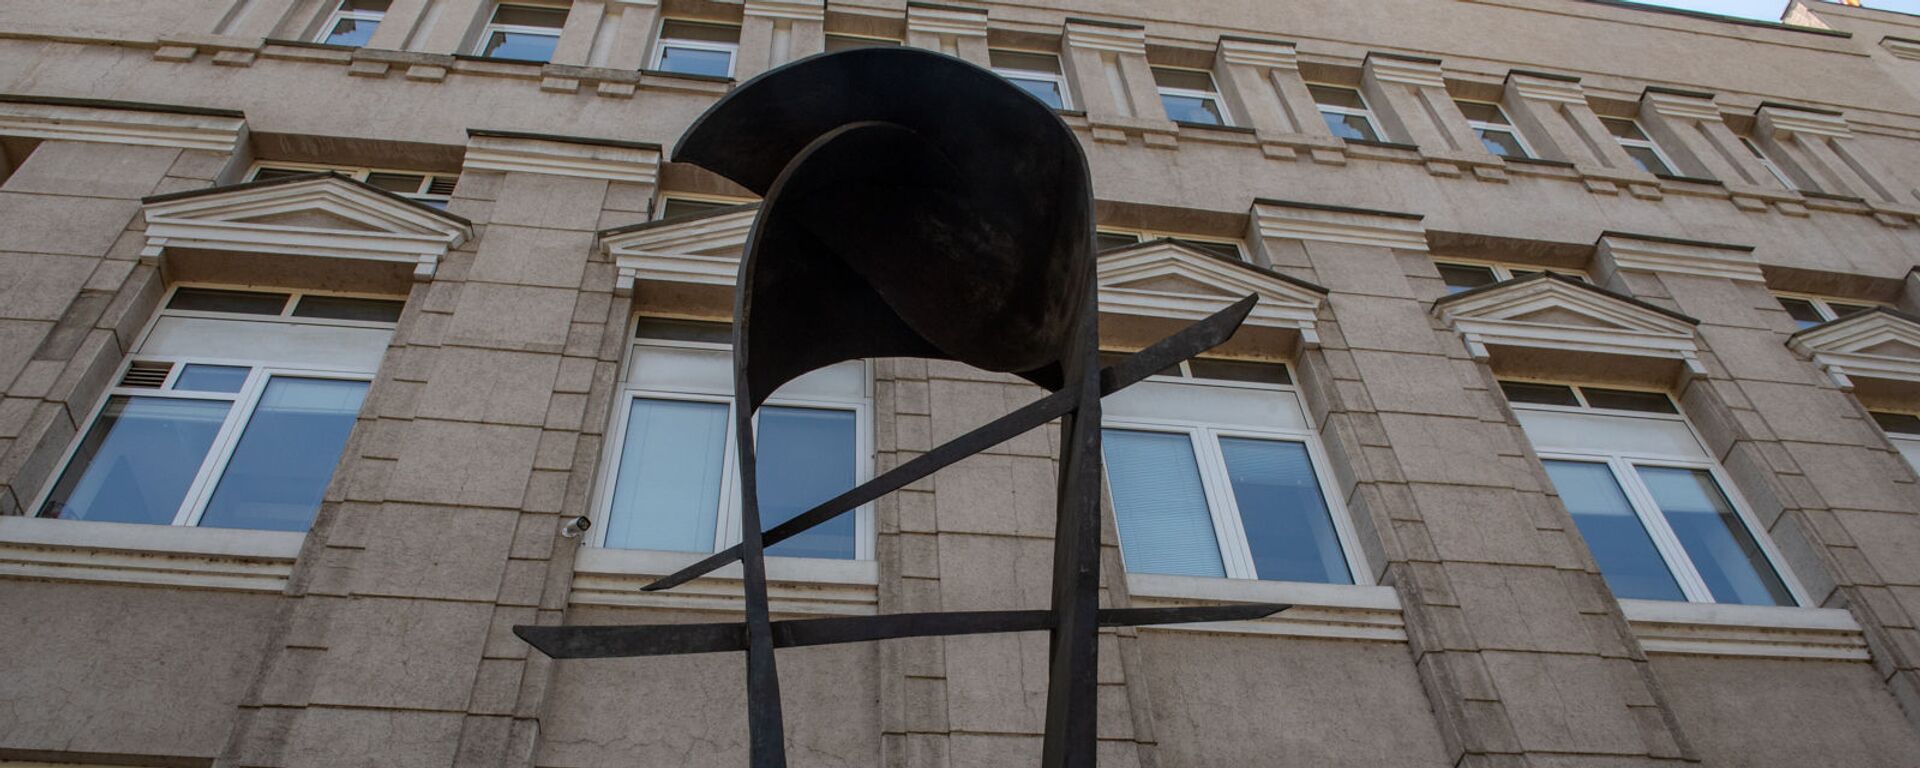 Скульптура армянскому драму перед зданием Центрального Банка Армении - Sputnik Армения, 1920, 04.05.2021